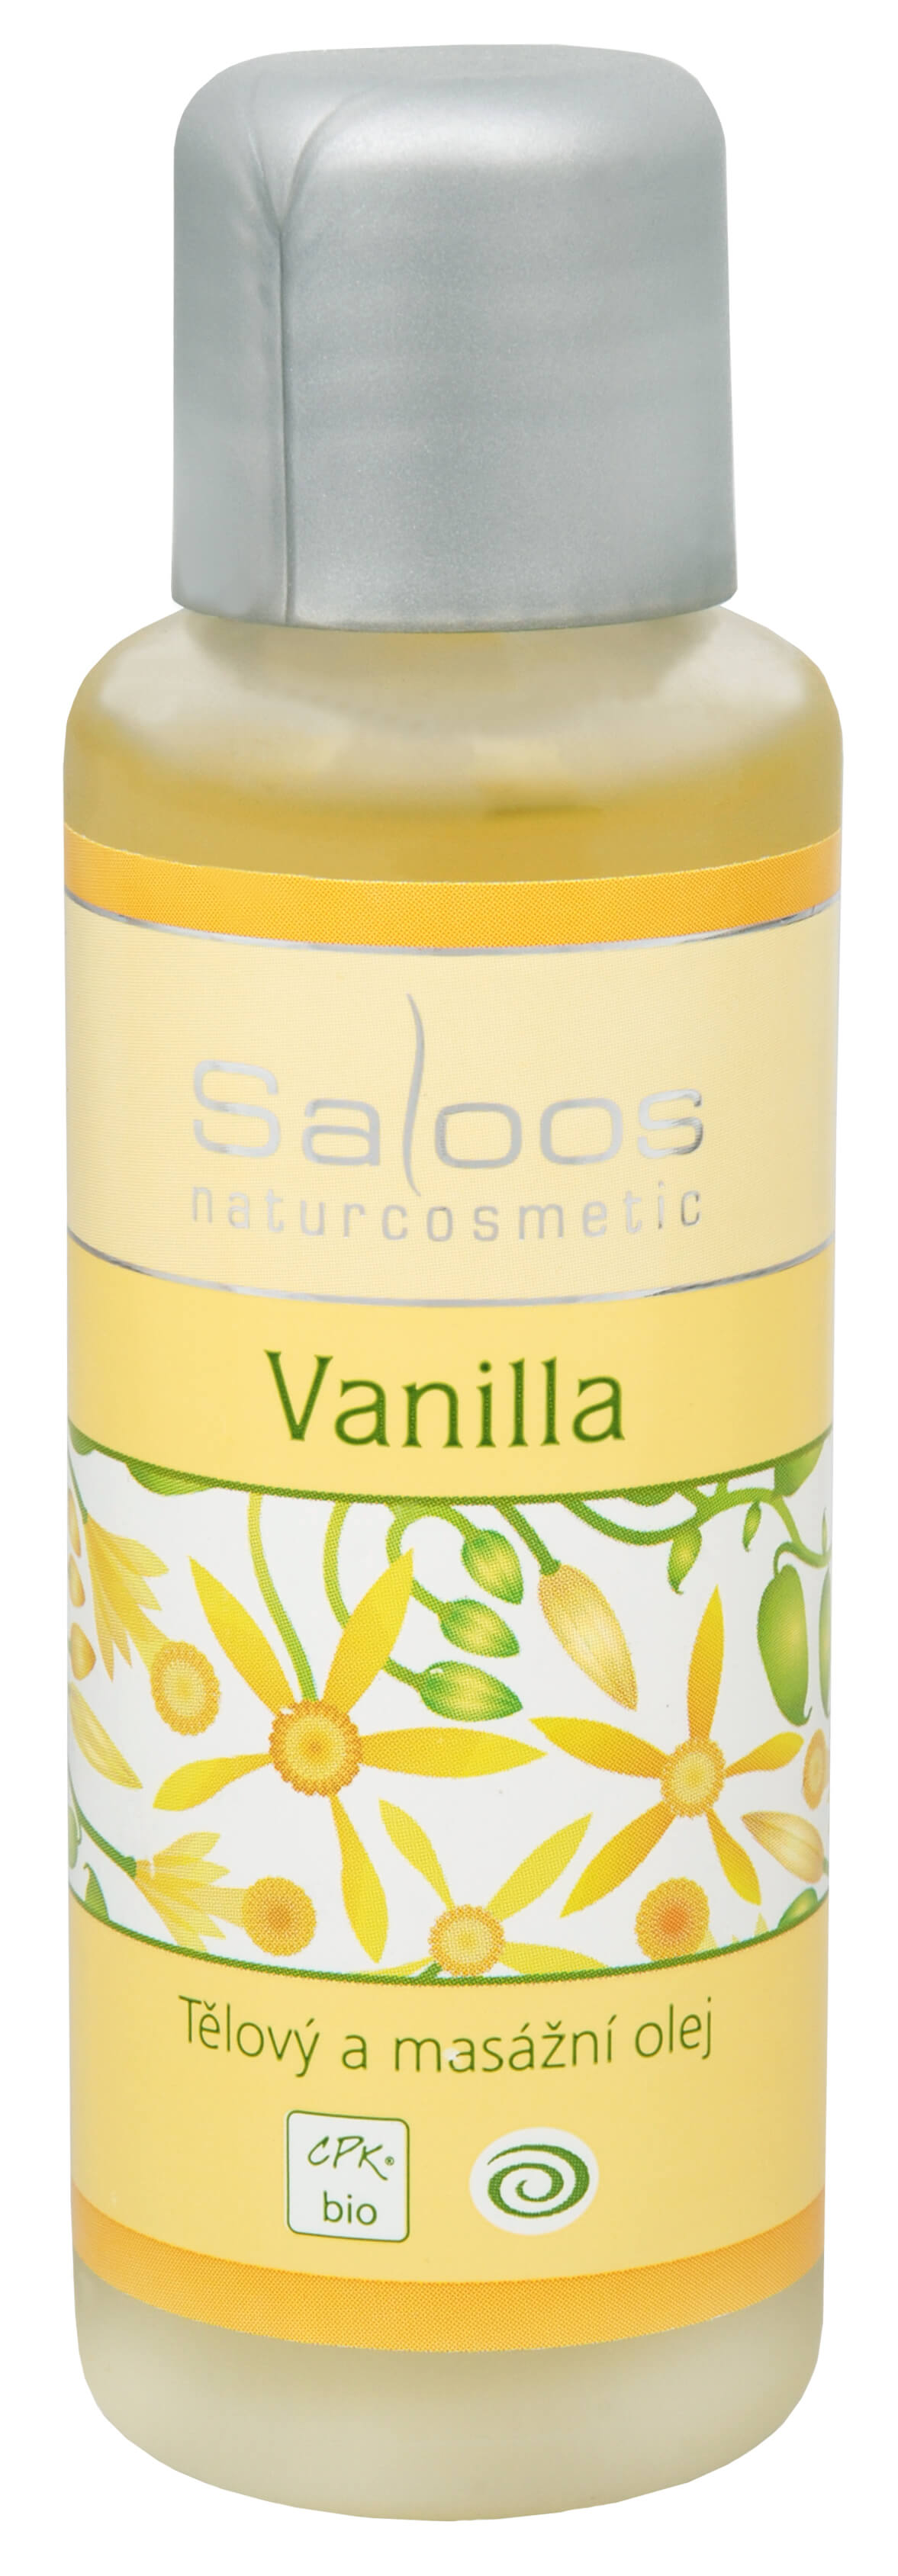 Zobrazit detail výrobku Saloos Bio tělový a masážní olej - Vanilla 50 ml + 2 měsíce na vrácení zboží